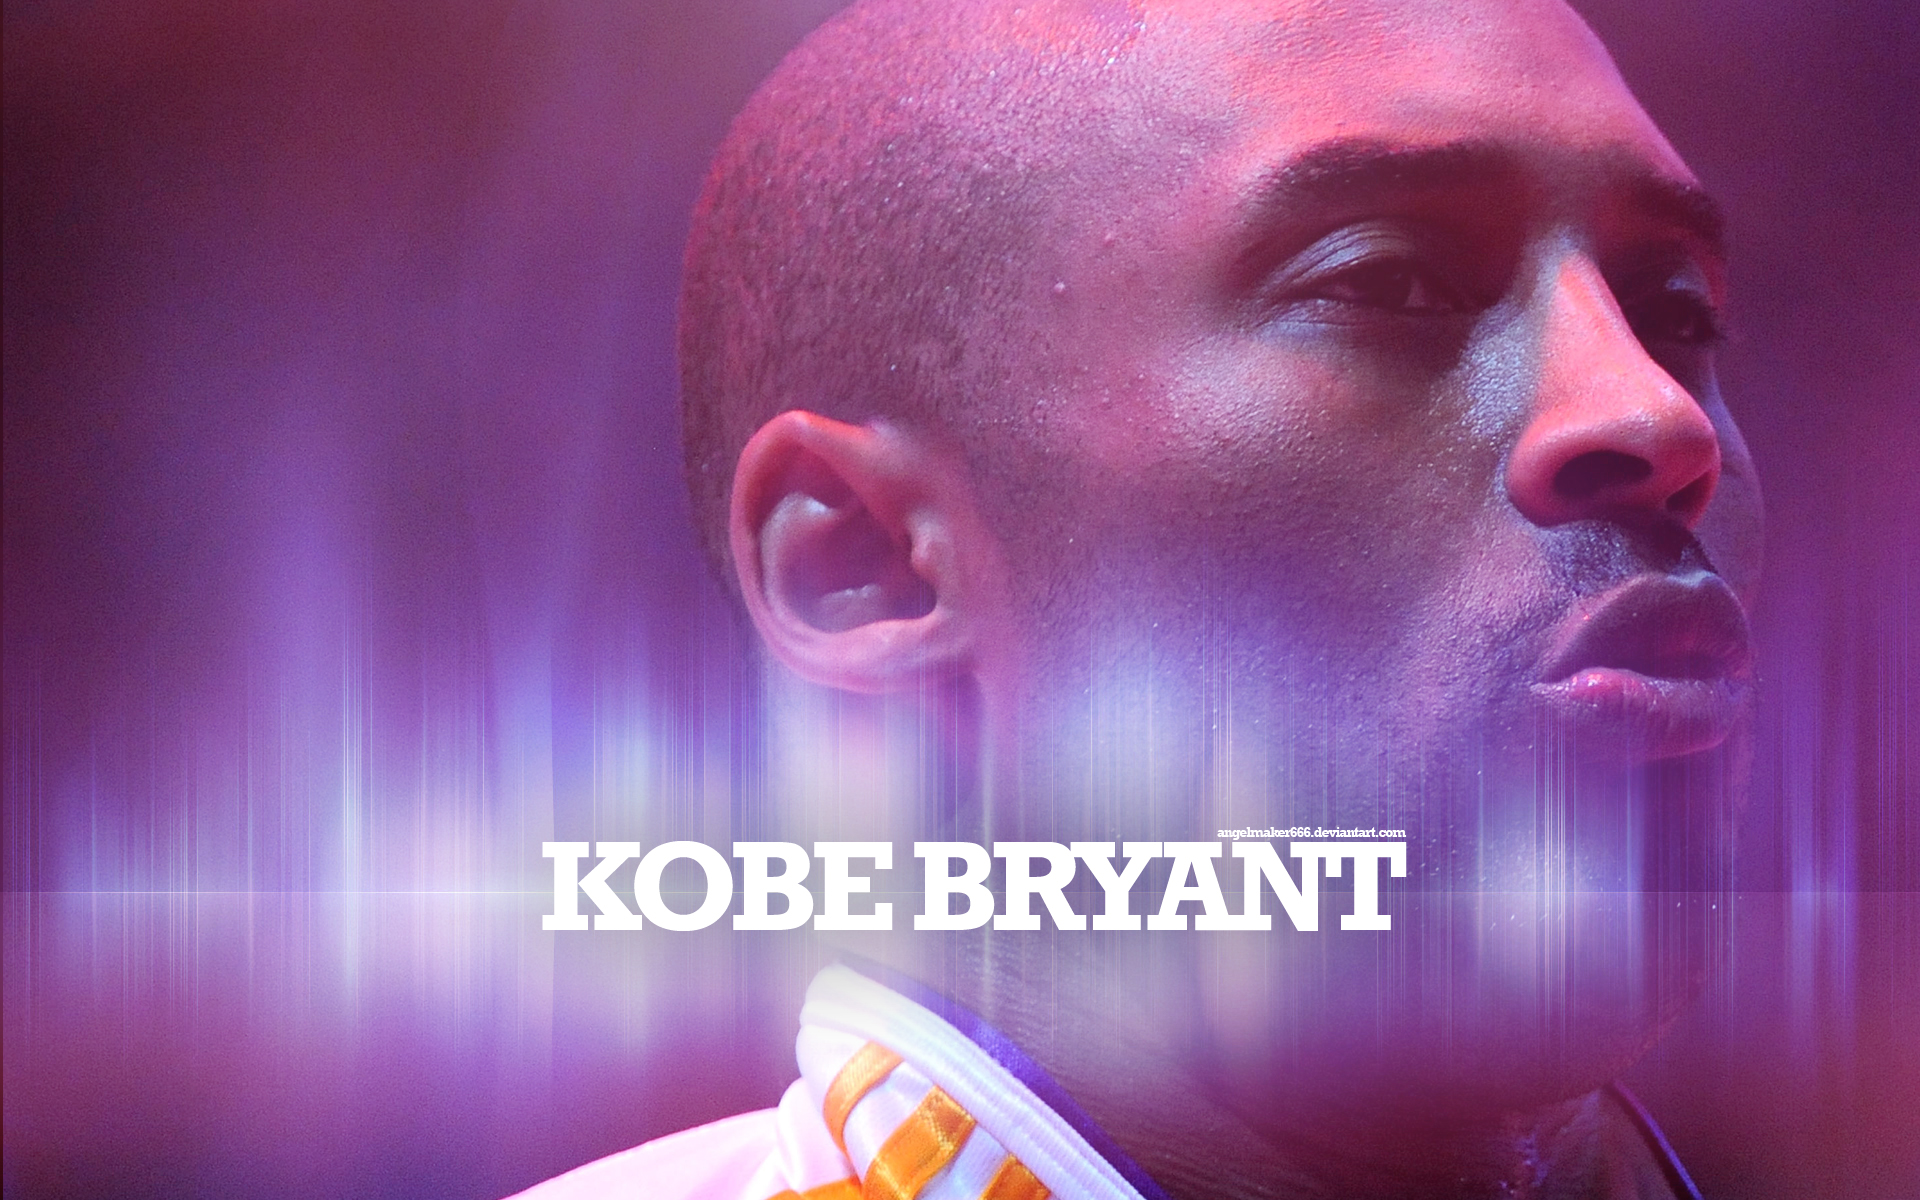 Descarga gratuita de fondo de pantalla para móvil de Baloncesto, Nba, Deporte, Kobe Bryant, Los Lakers De Los Angeles.